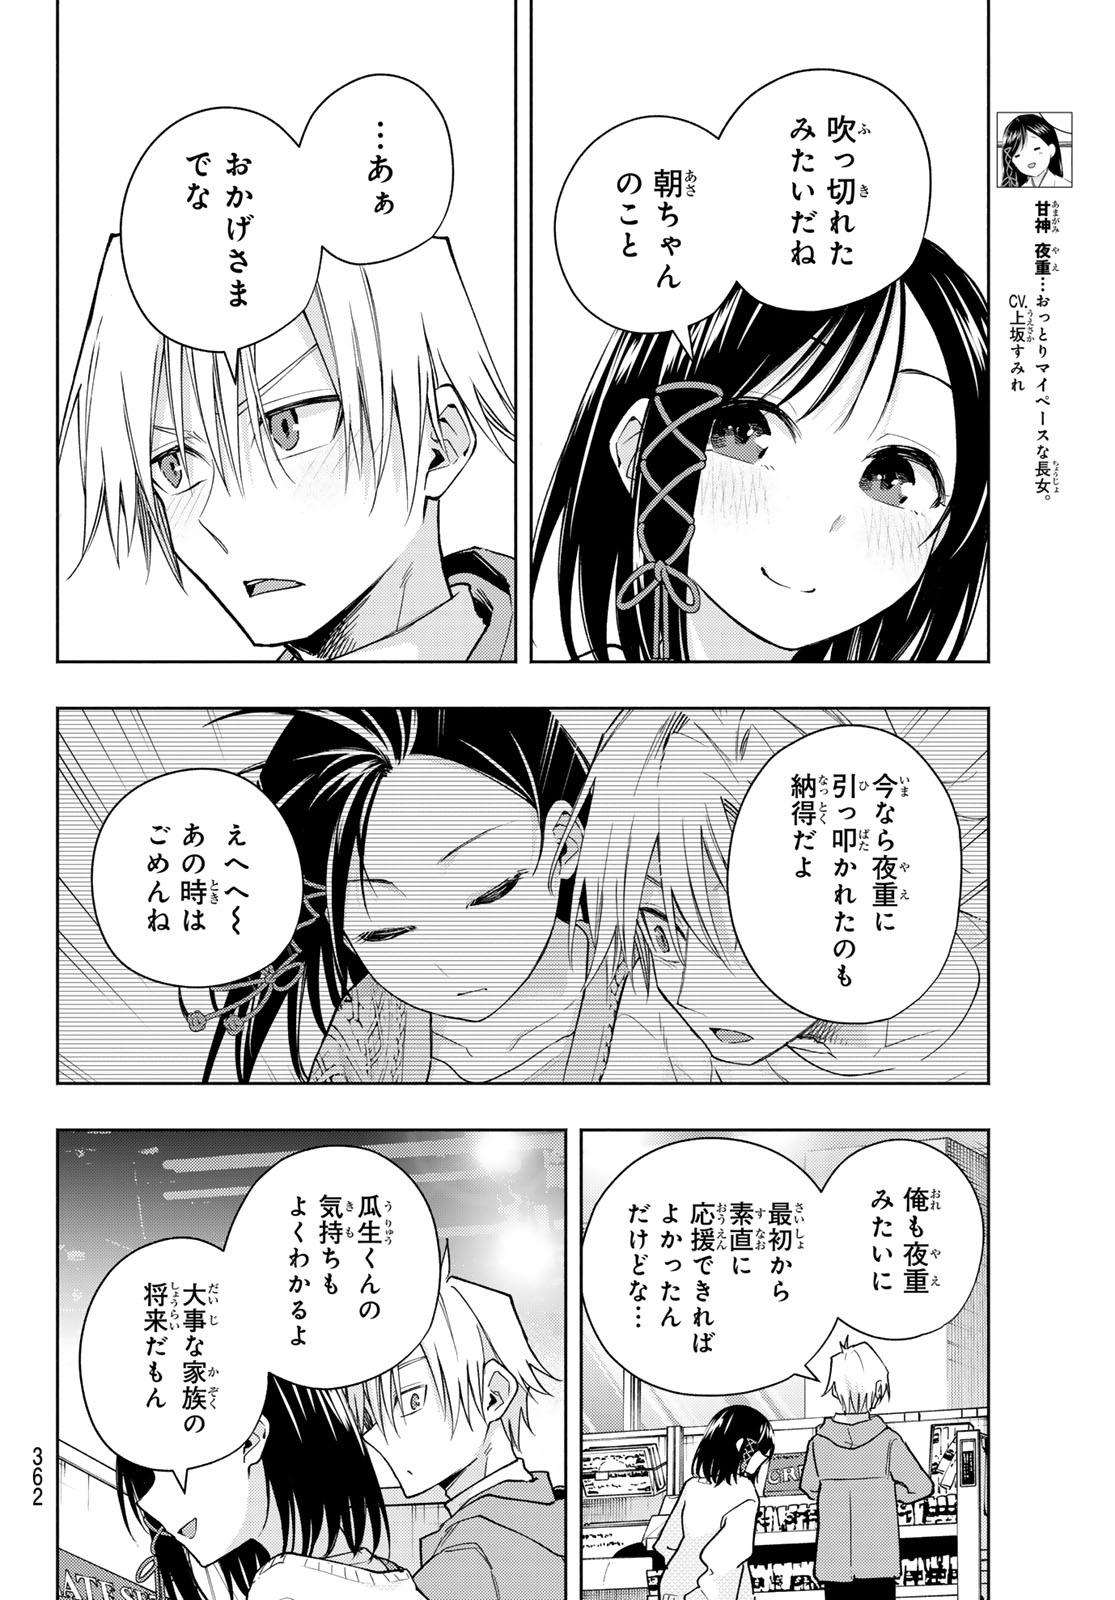 Amagami-san Chi no Enmusubi - Chapter 139 - Page 4